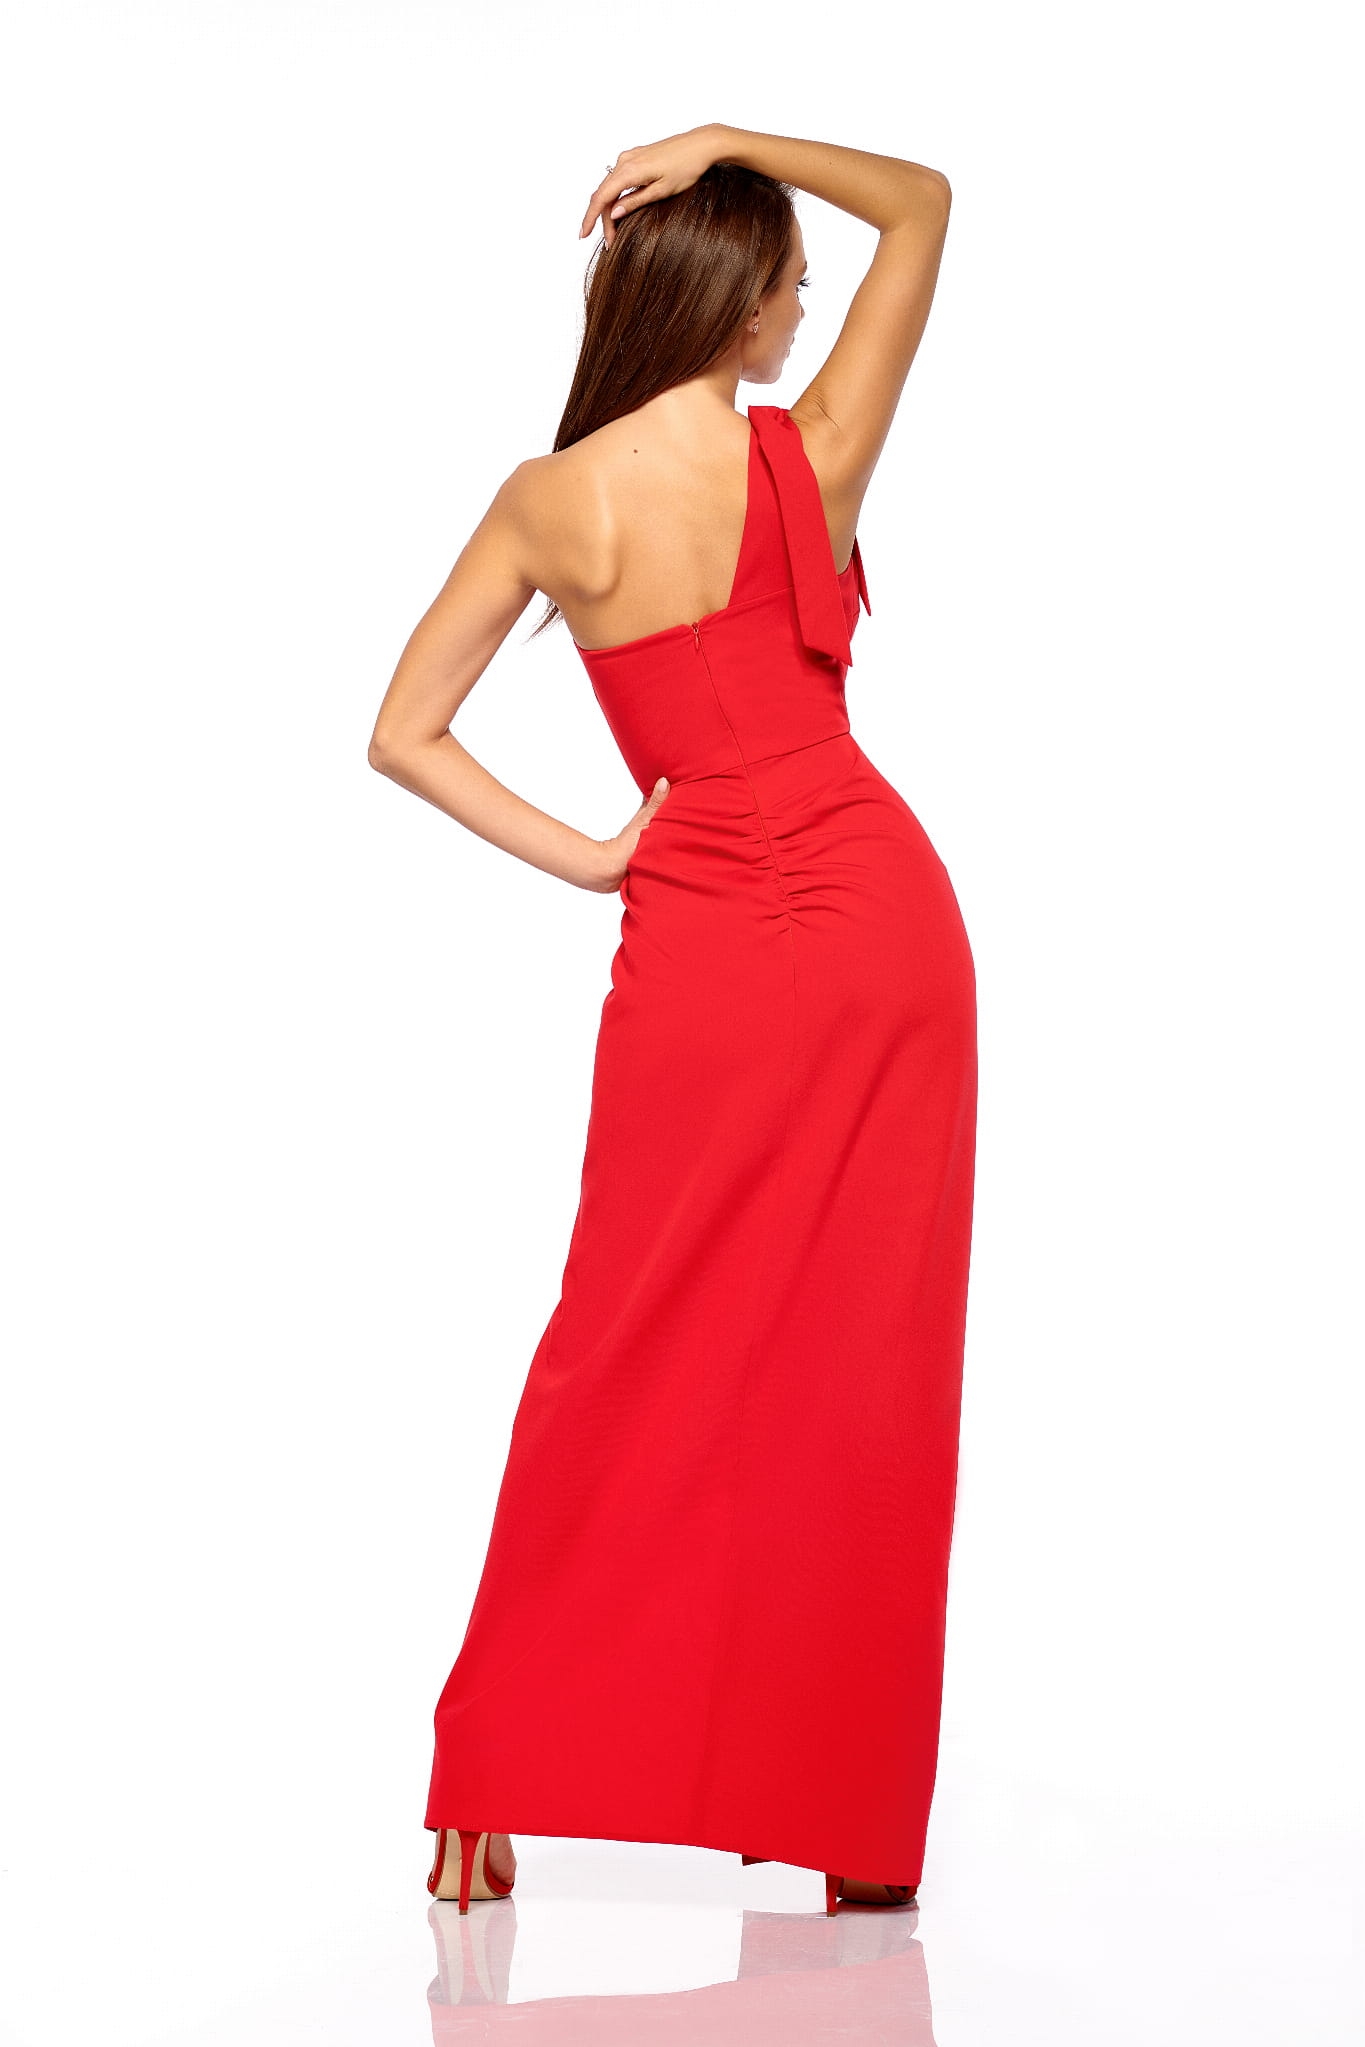 HERA RED - Długa suknia w kolorze czerwonym